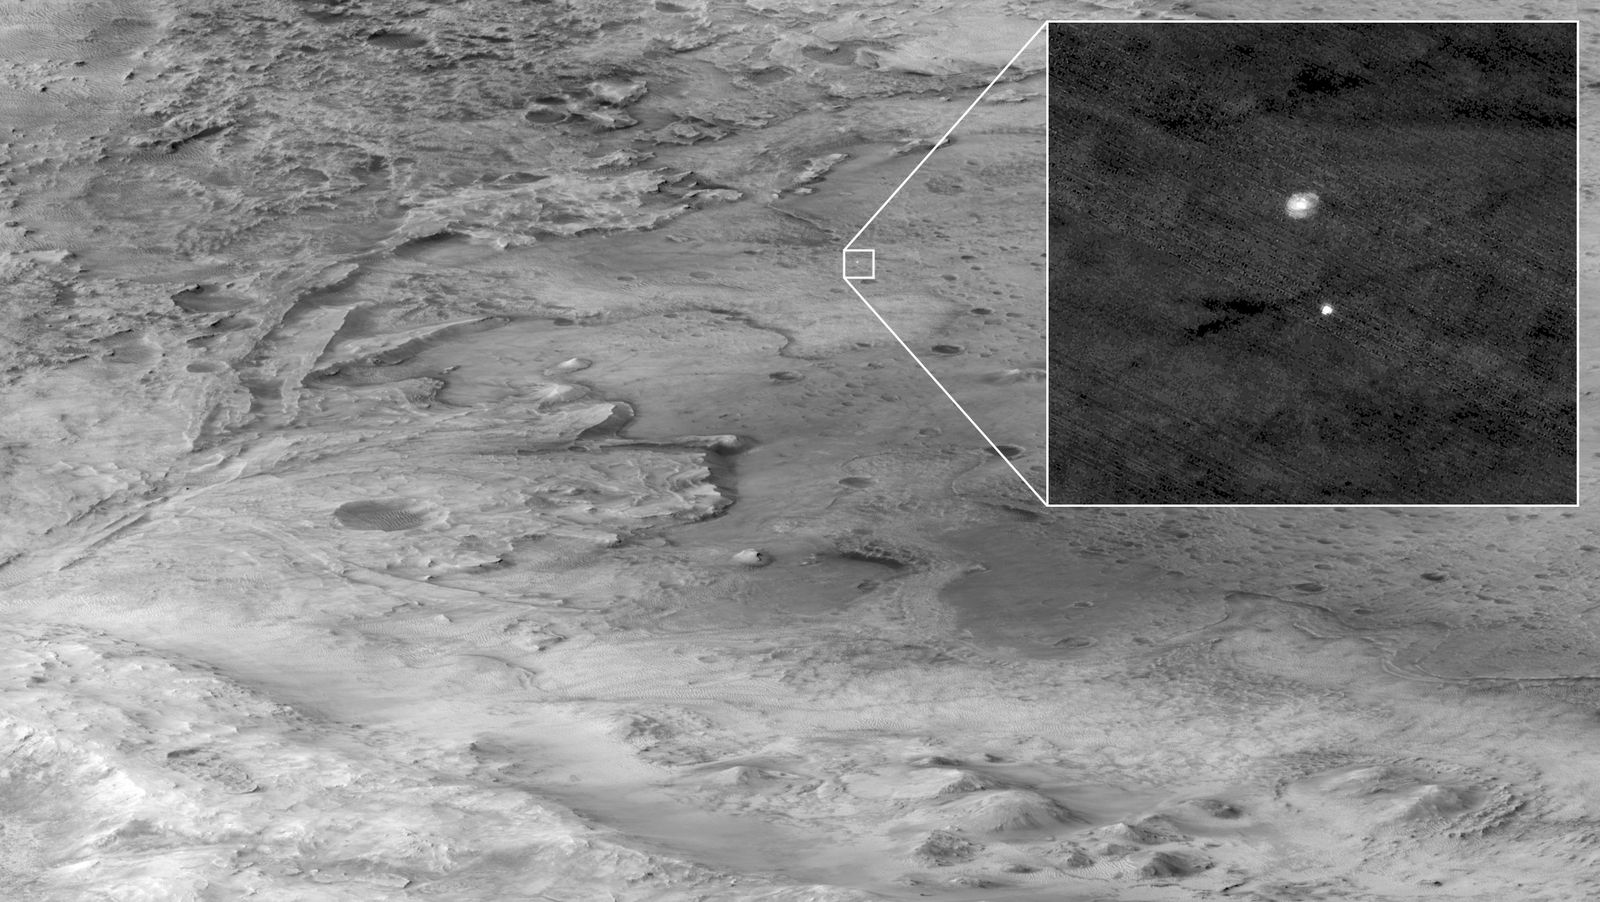 กล้อง HiRISE บันทึกภาพขณะเพอร์เซเวียแรนส์ร่อนลงสัมผัสพื้นผิวดาวอังคาร